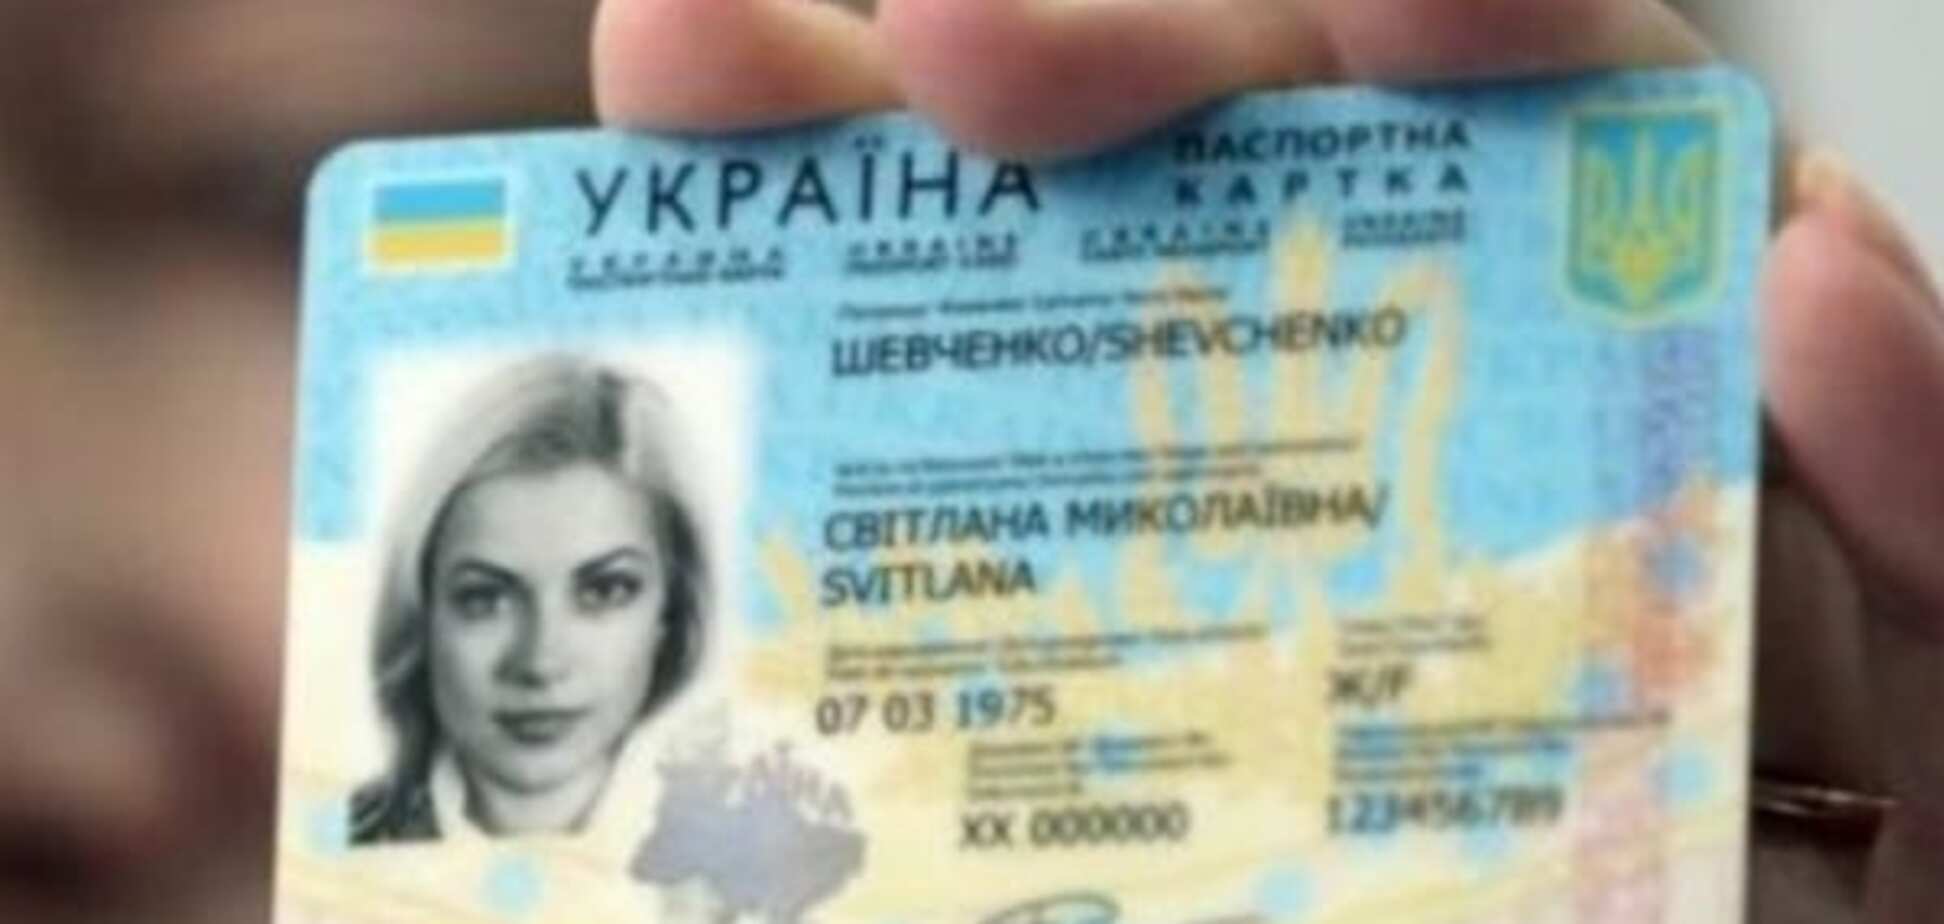 Электронные паспорта: в Украине начинается выдача новых документов